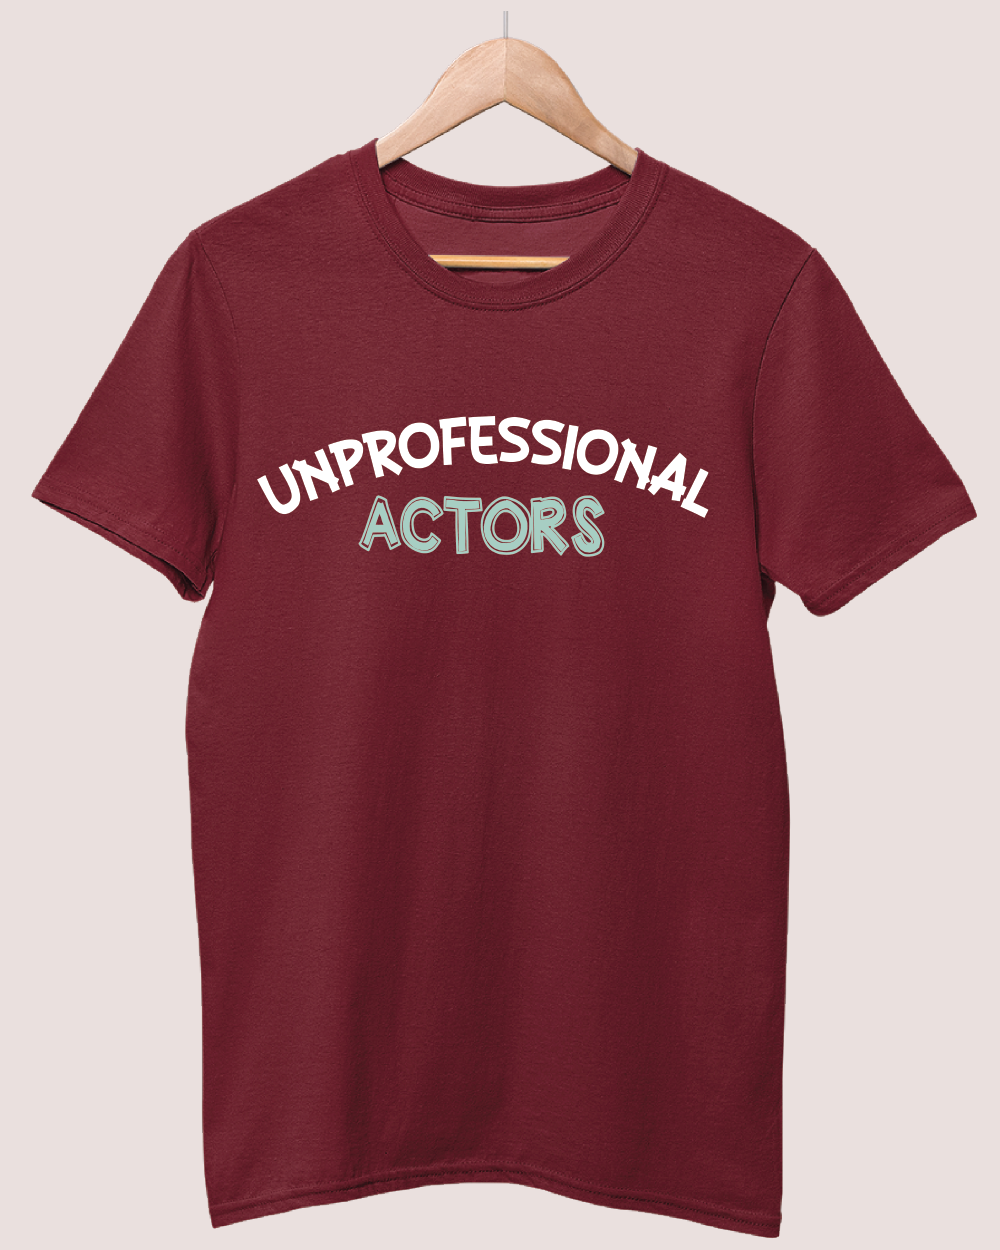 Unprofessional actors T-shirt